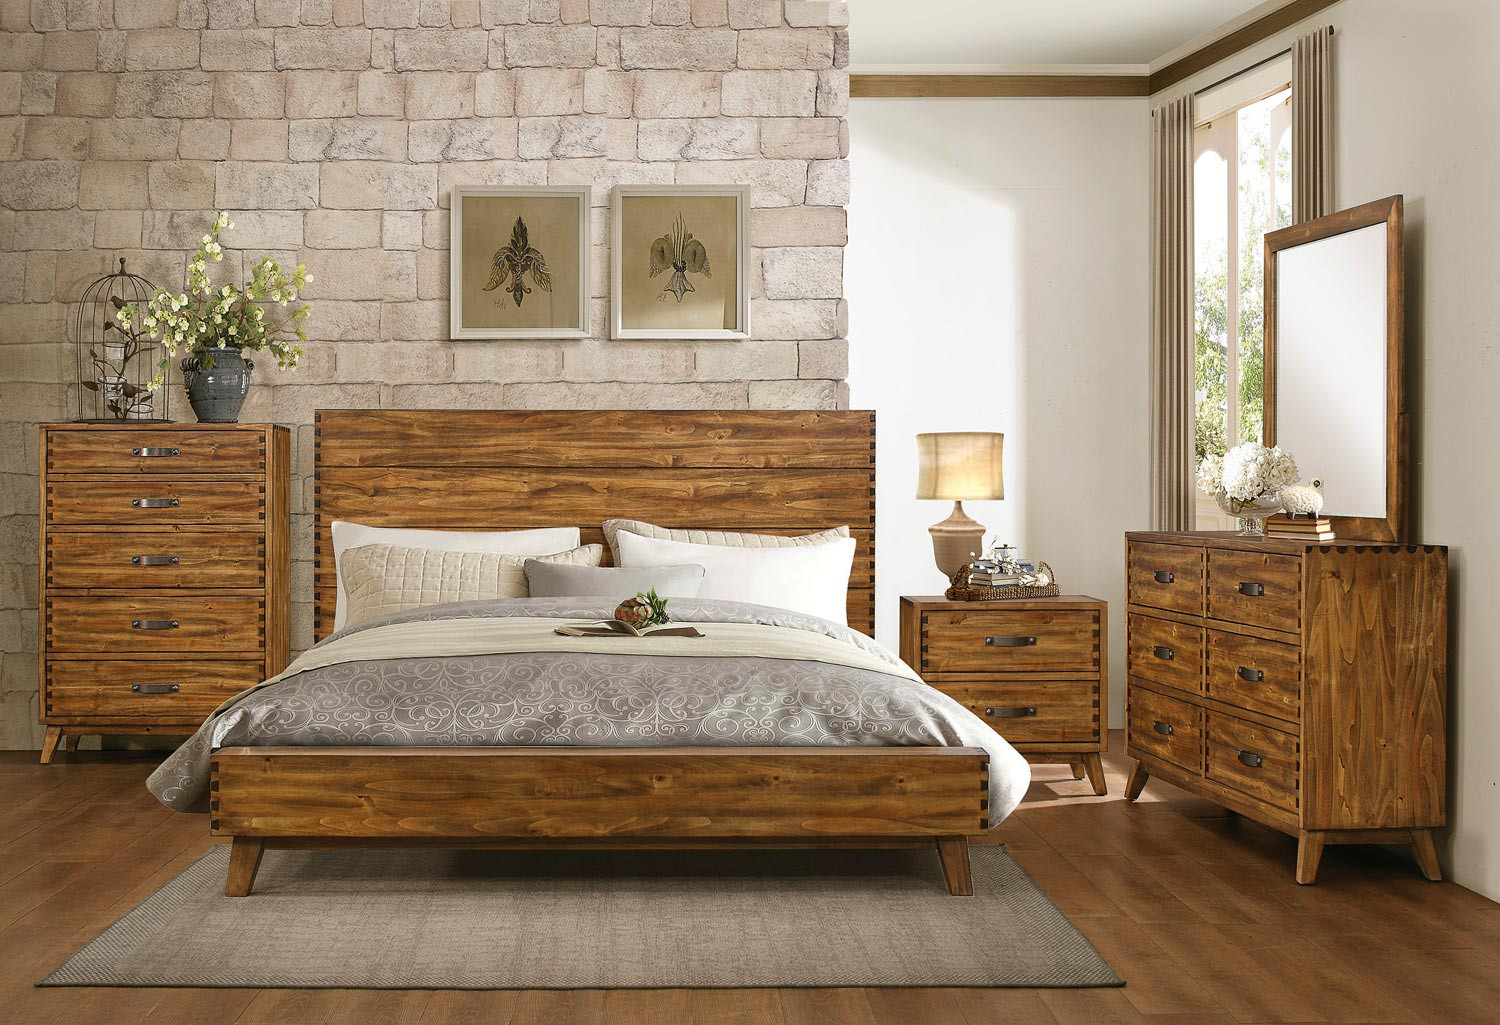 Rustic Bedroom Furniture
 Homelegance Sorrel Panel Platform Bedroom Set Rustic